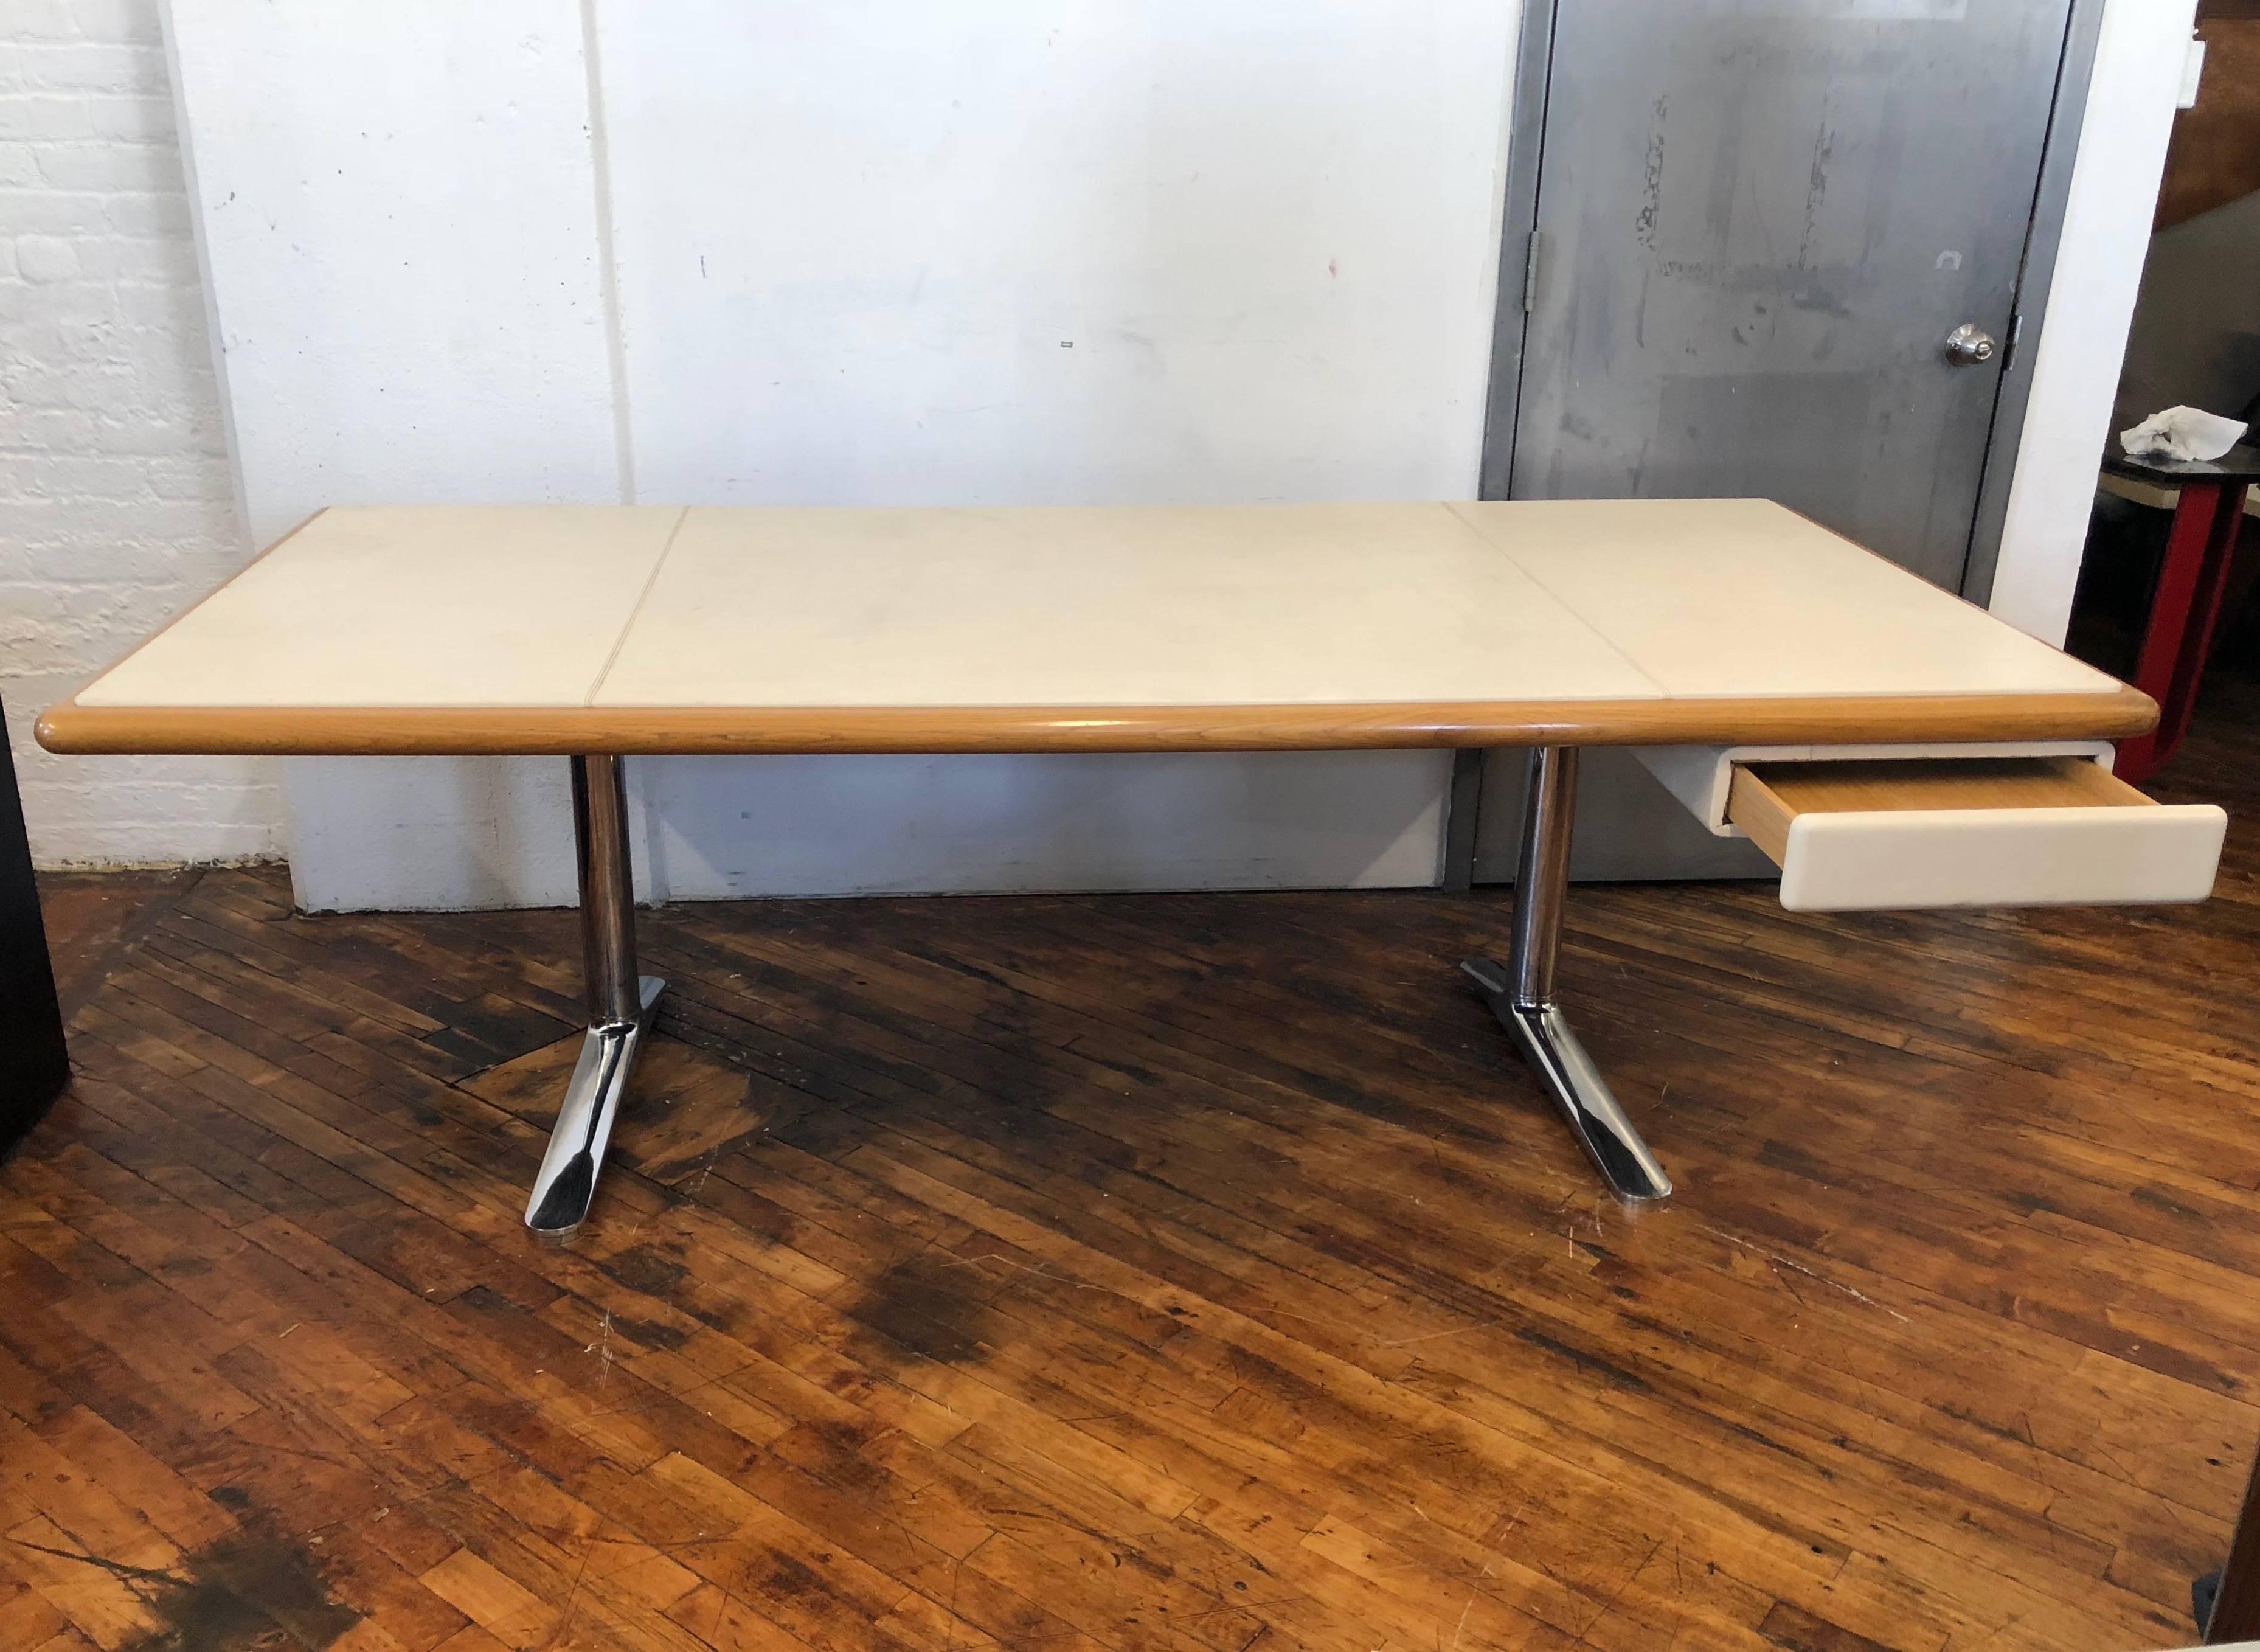 Platner-Schreibtisch mit einer Schublade und einer Platte aus natürlich gebeizter Eiche und cremefarbenem Leder, gestützt auf zwei Beine aus poliertem Stahl.